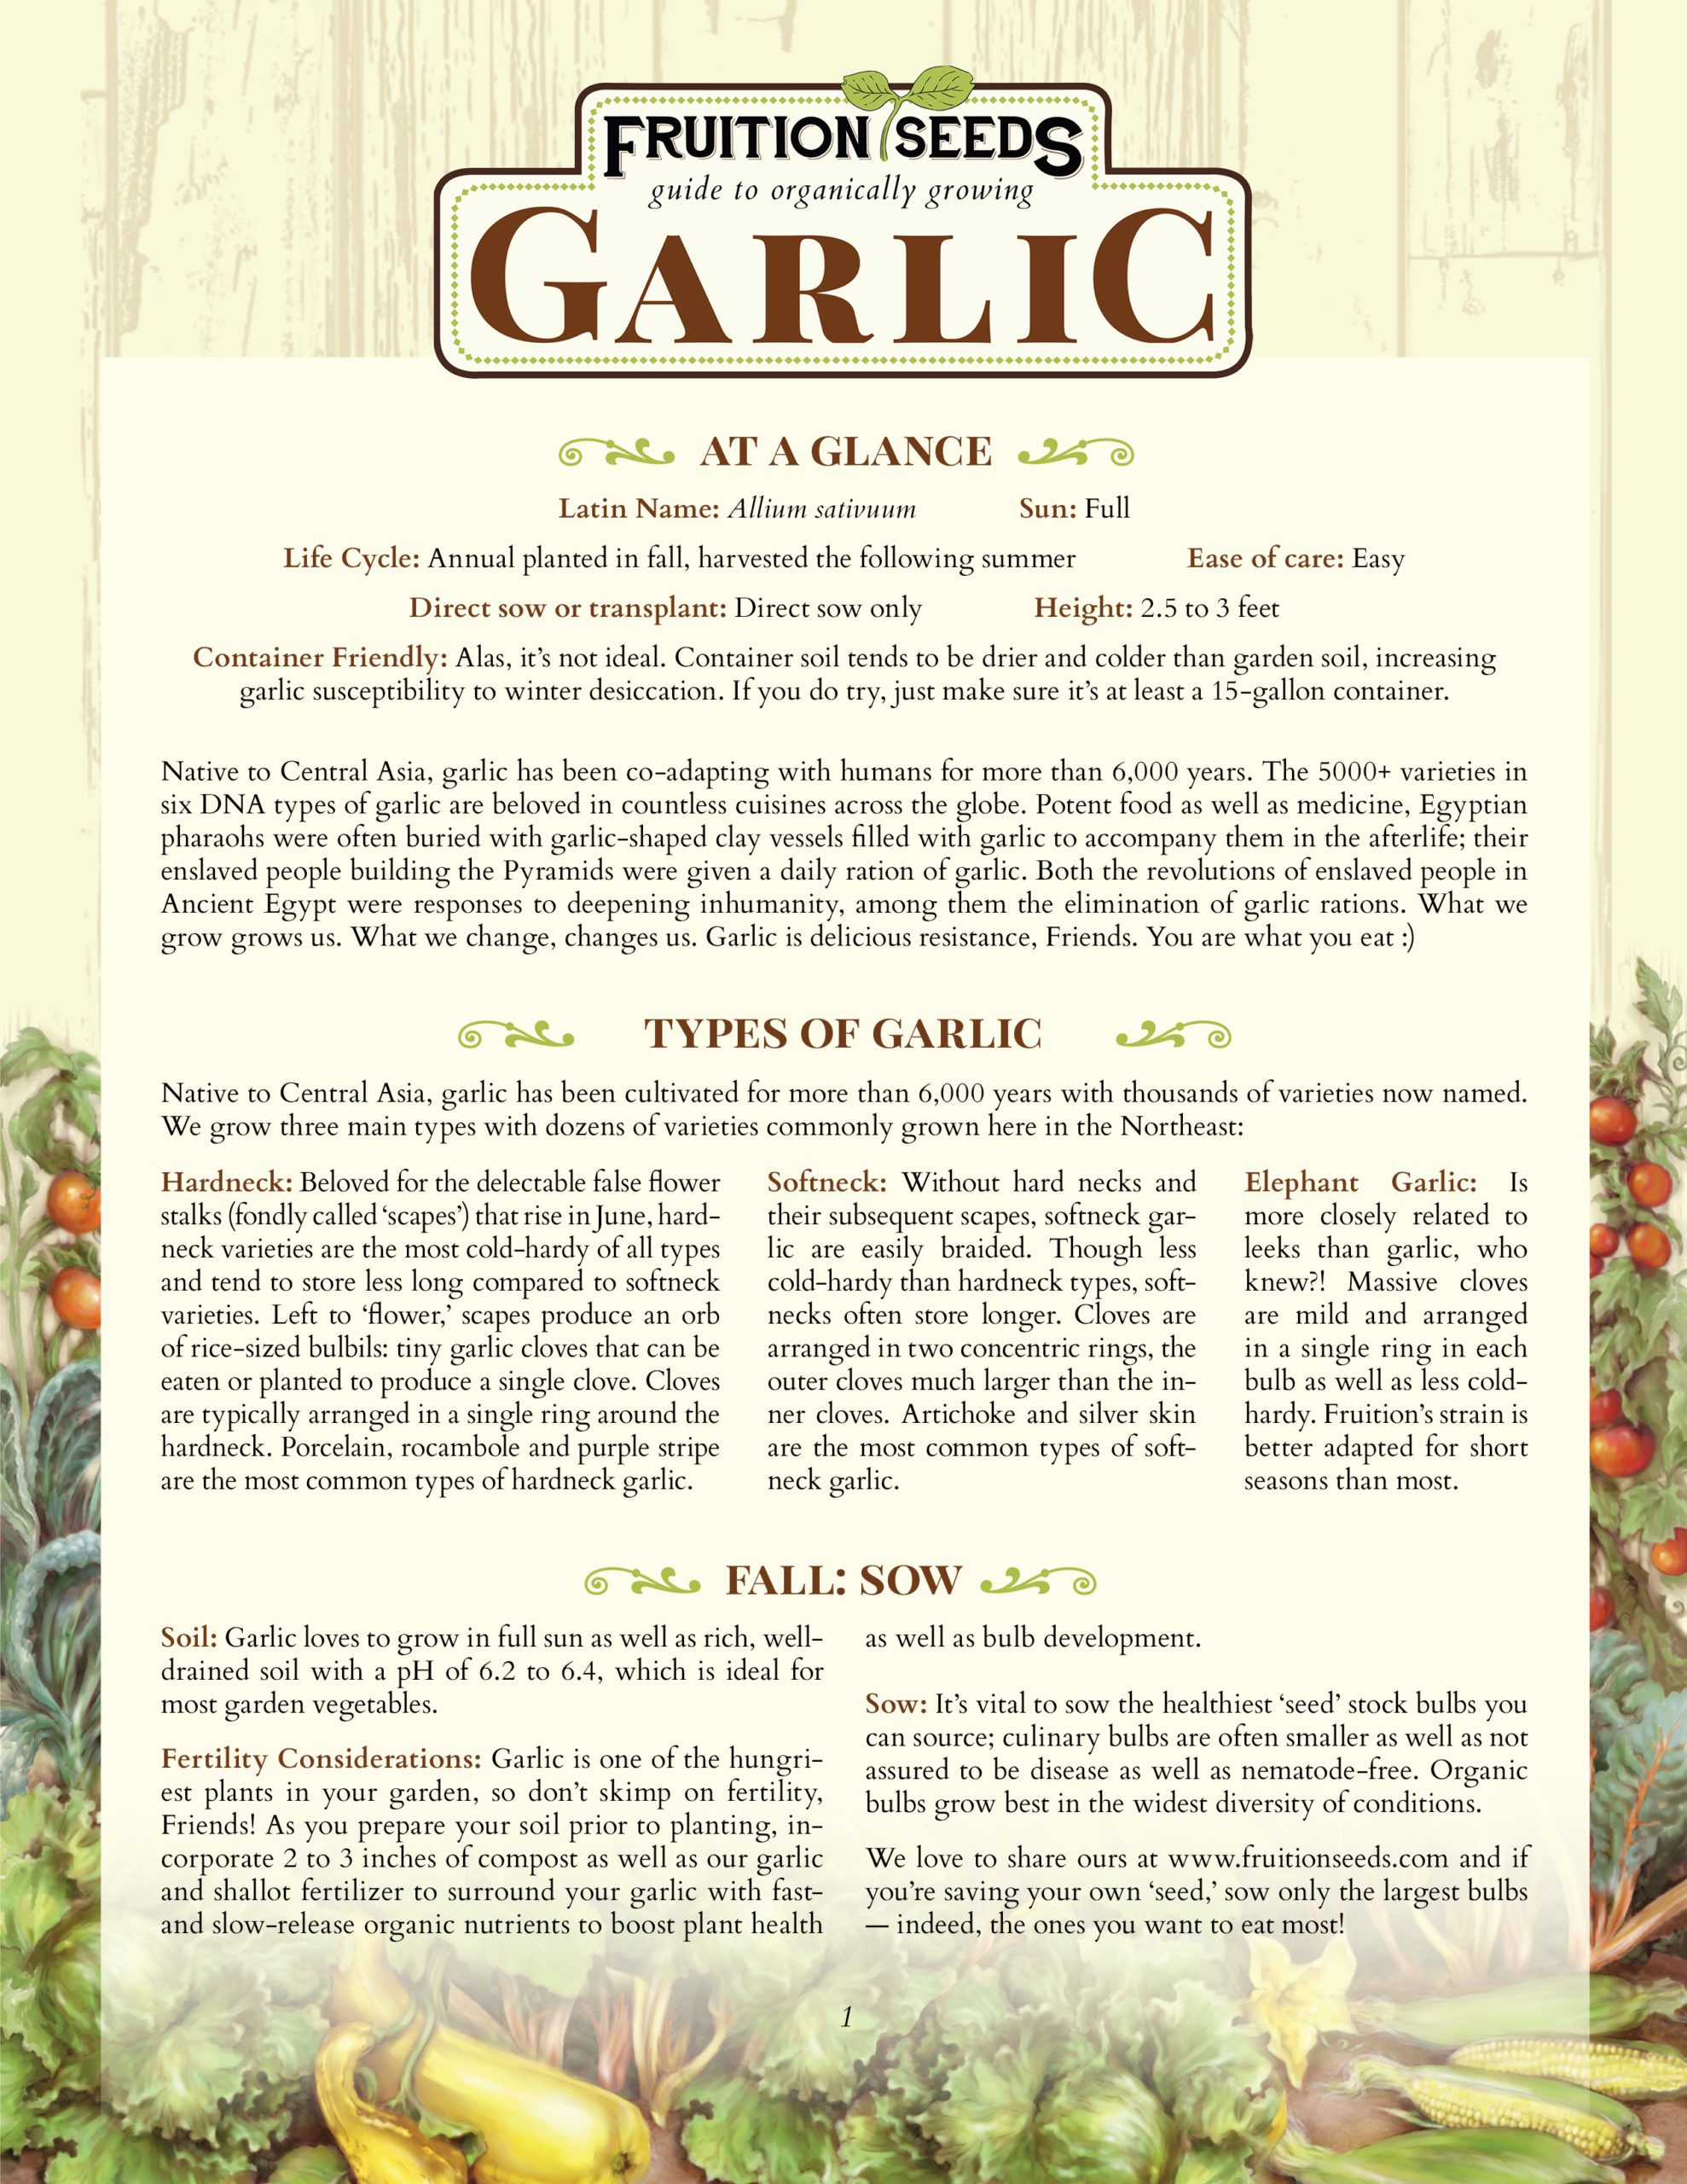 Growing Guide for Garlic Growing Guide